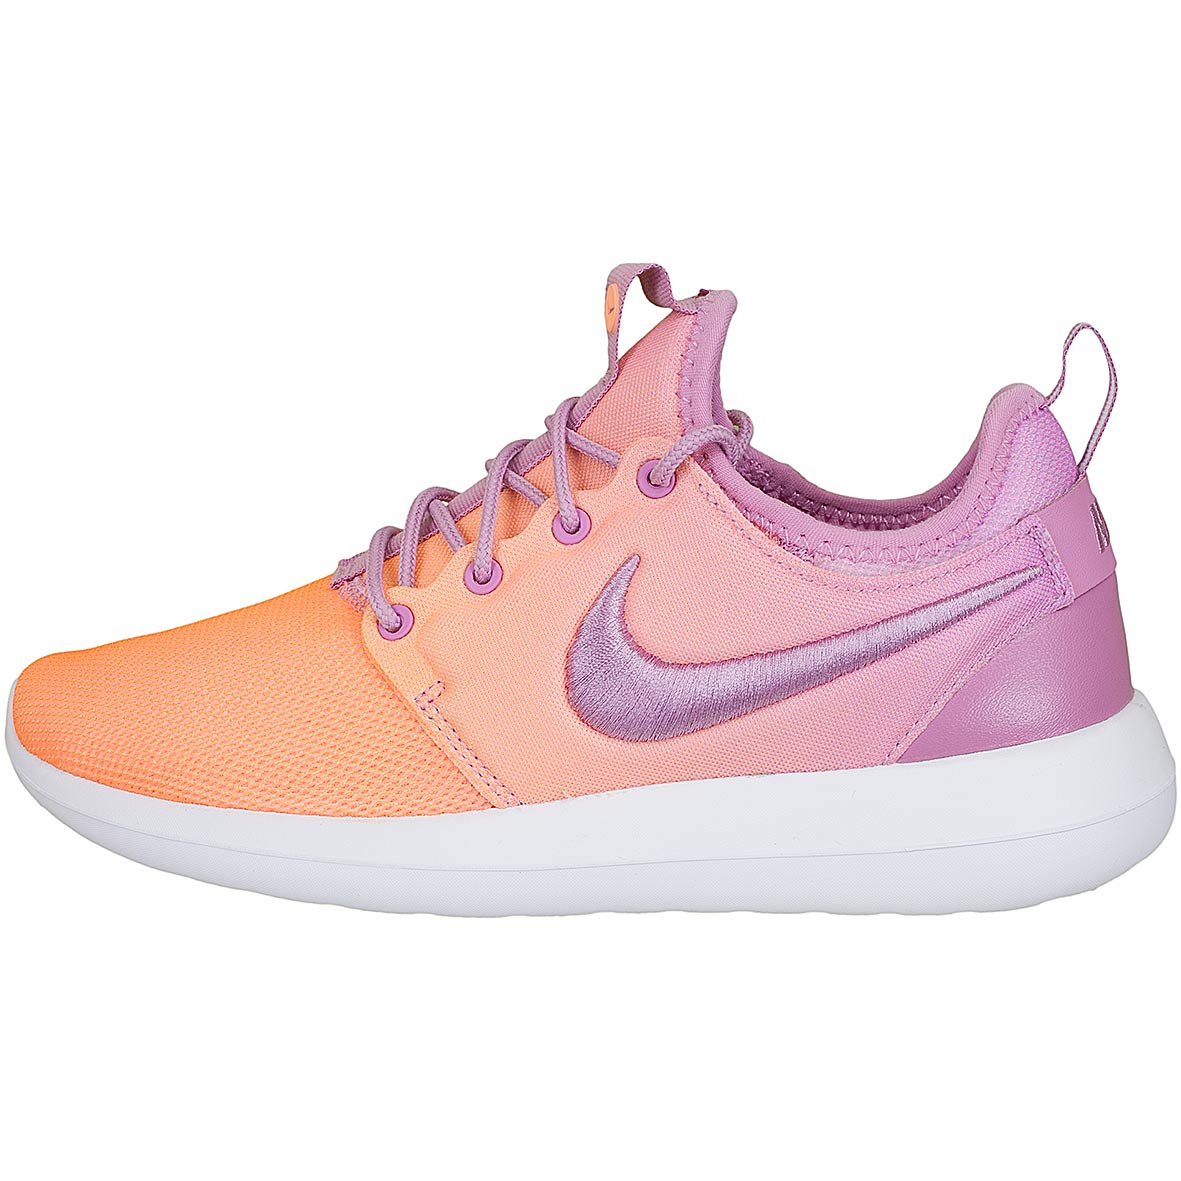 ☆ Nike Damen Sneaker Roshe Two BR orange/lila - hier bestellen!